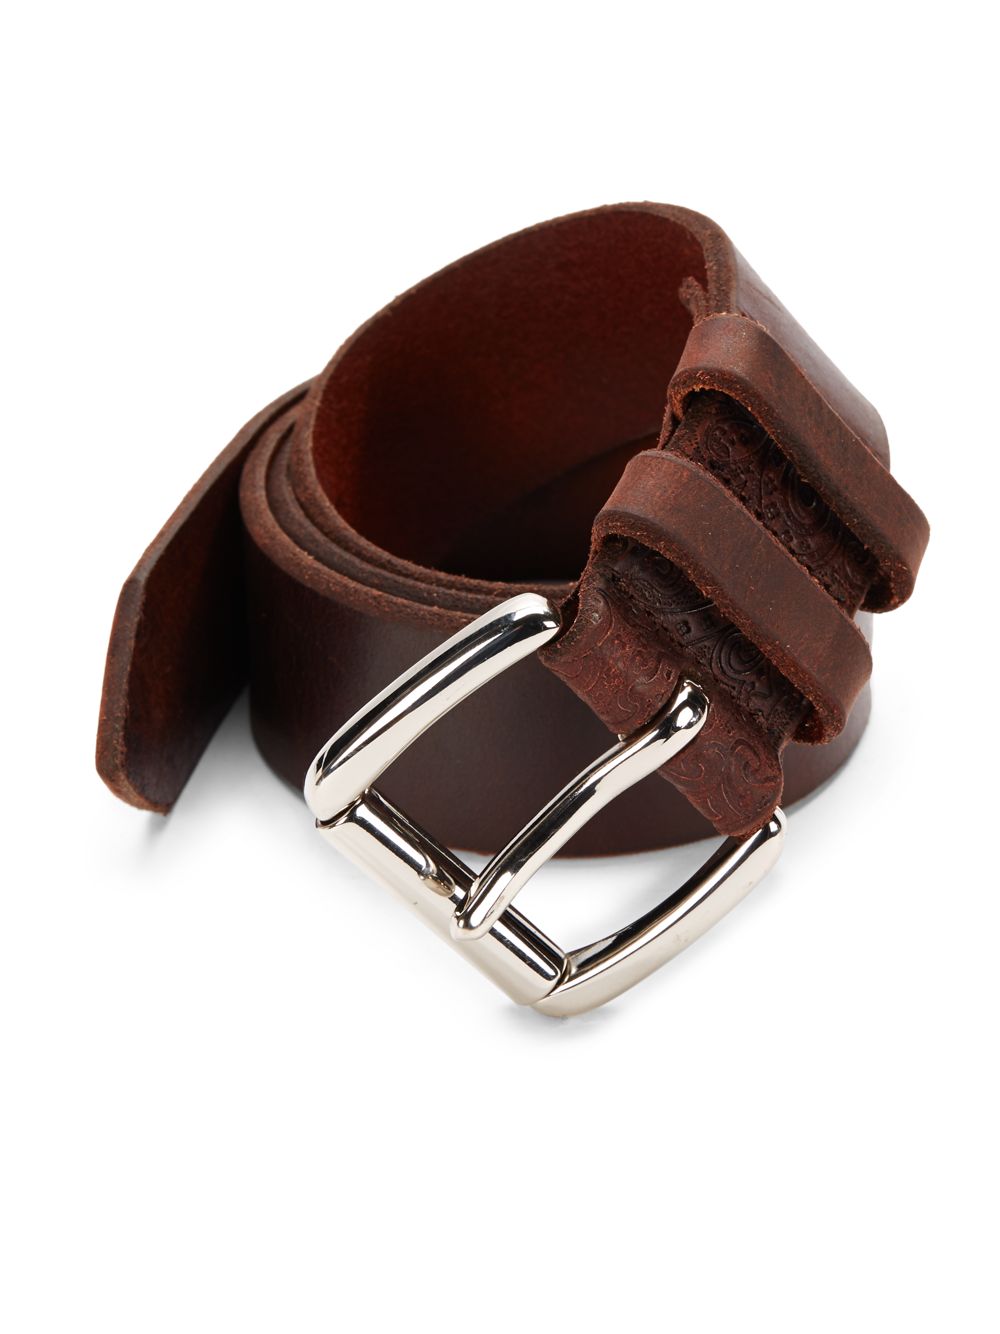 Lyst - Robert graham Duvall Leather Belt in Brown for Men